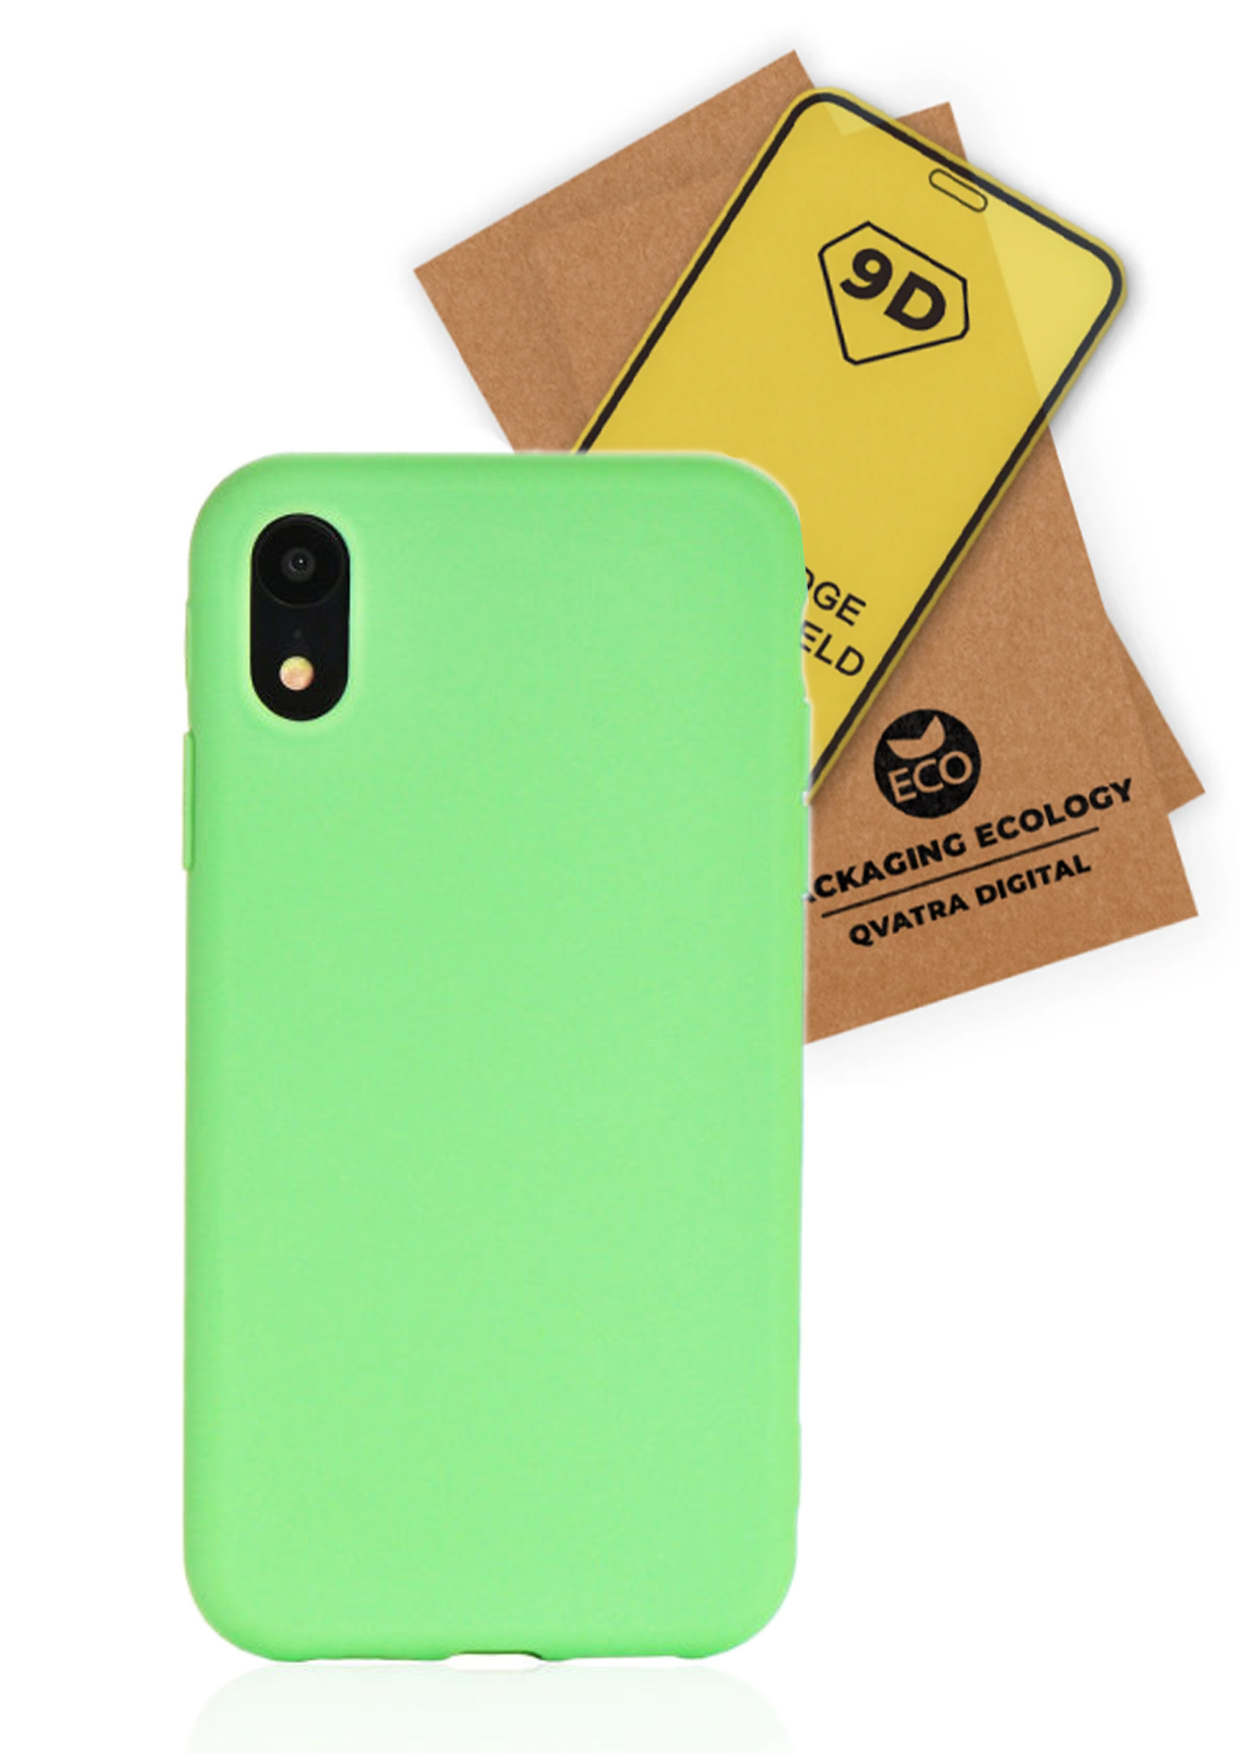 фото Чехол с защитным стеклом qvatra для iphone xr зеленый